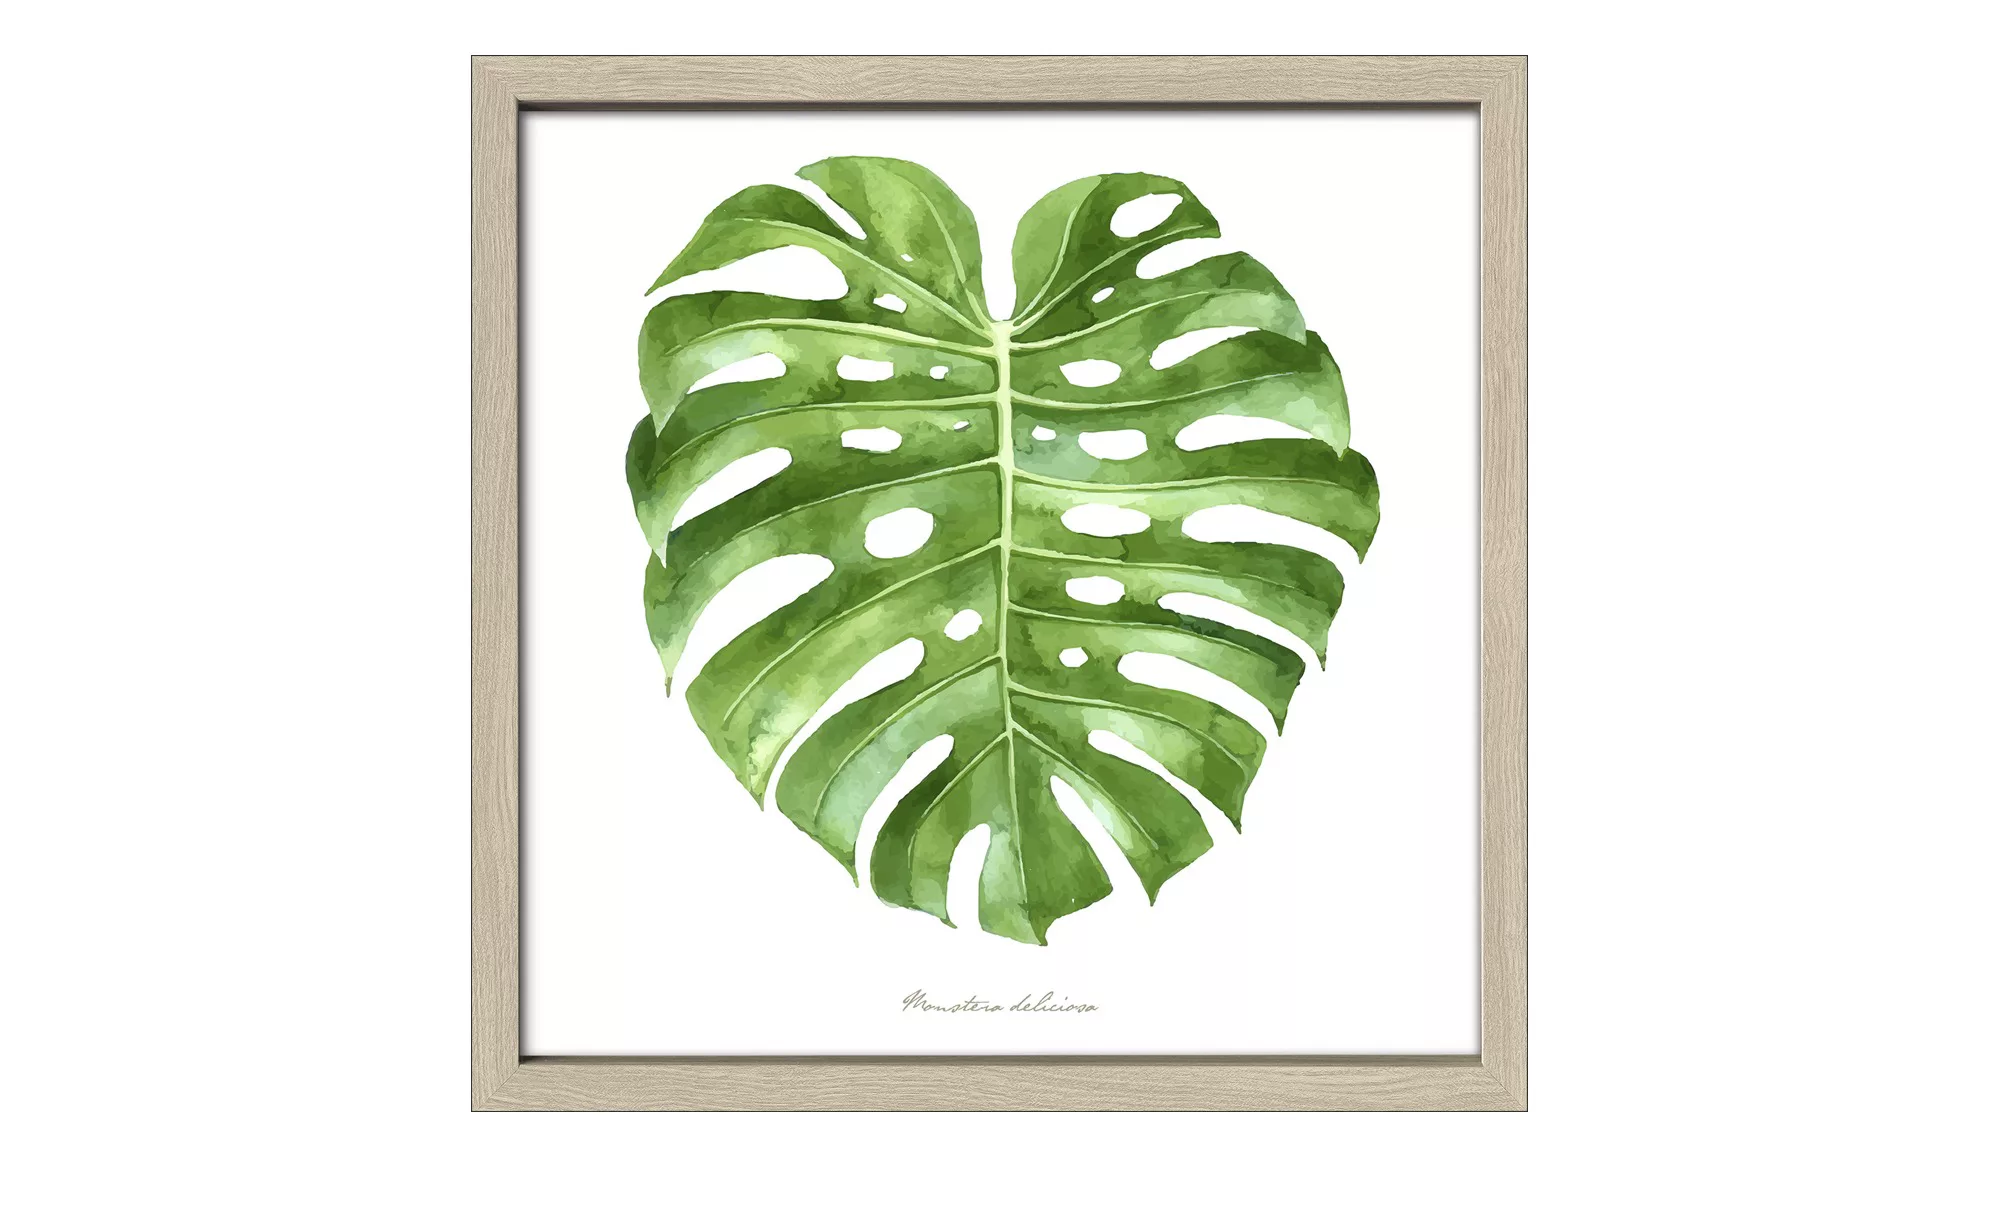 Gerahmtes Bild 30x30 cm  Green Leaf II - 30 cm - 30 cm - Sconto günstig online kaufen